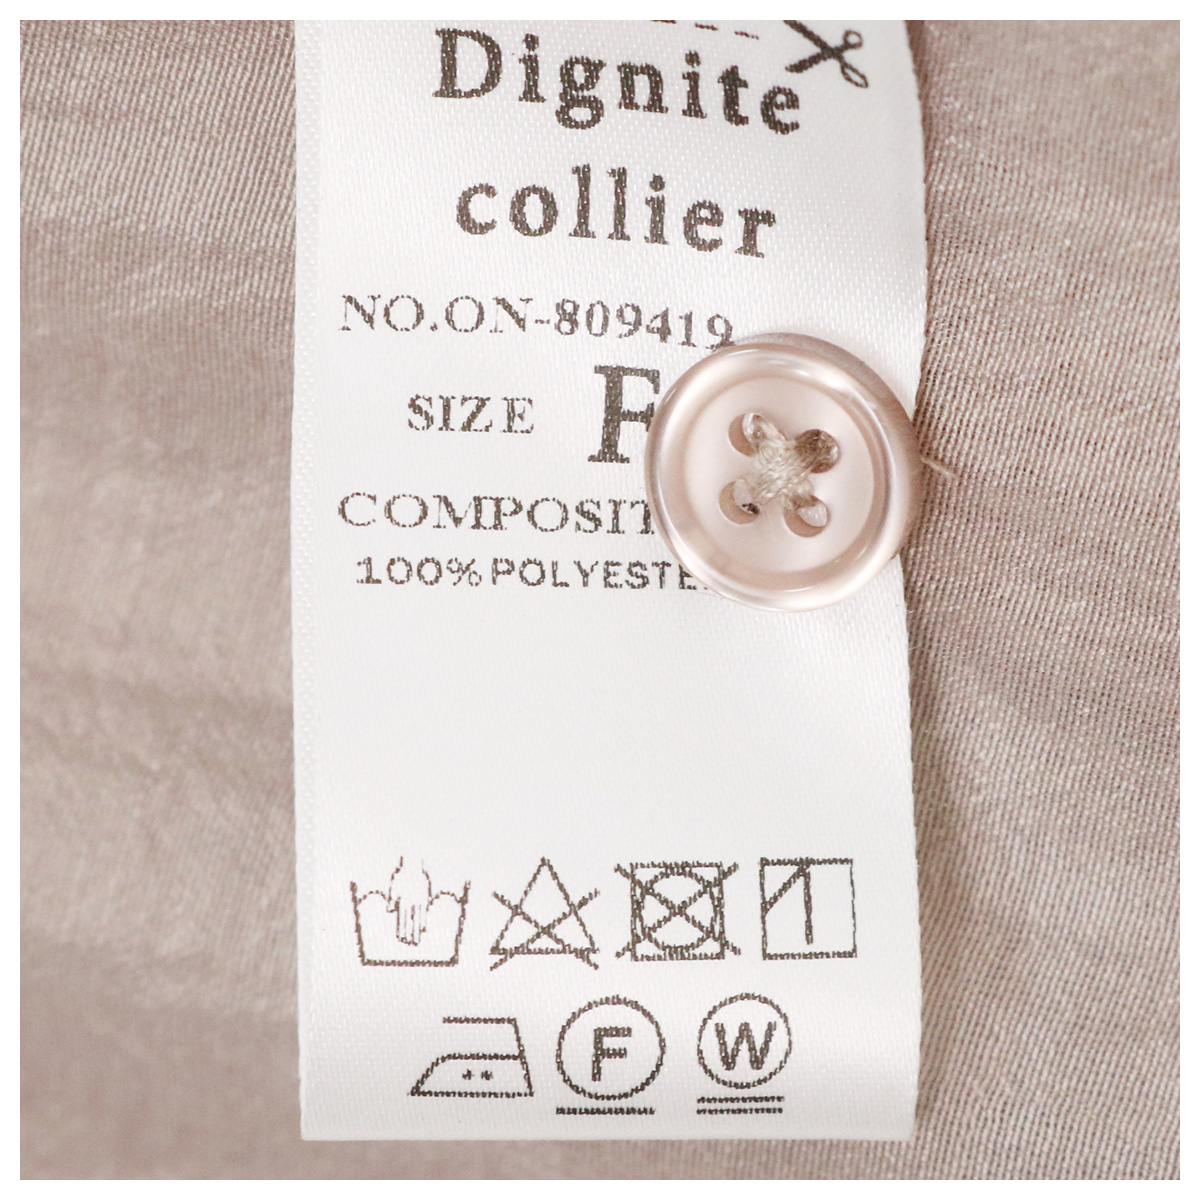 ブラウスセットアップ 33 ベージュ【Dignite collier(ディニテコリエ